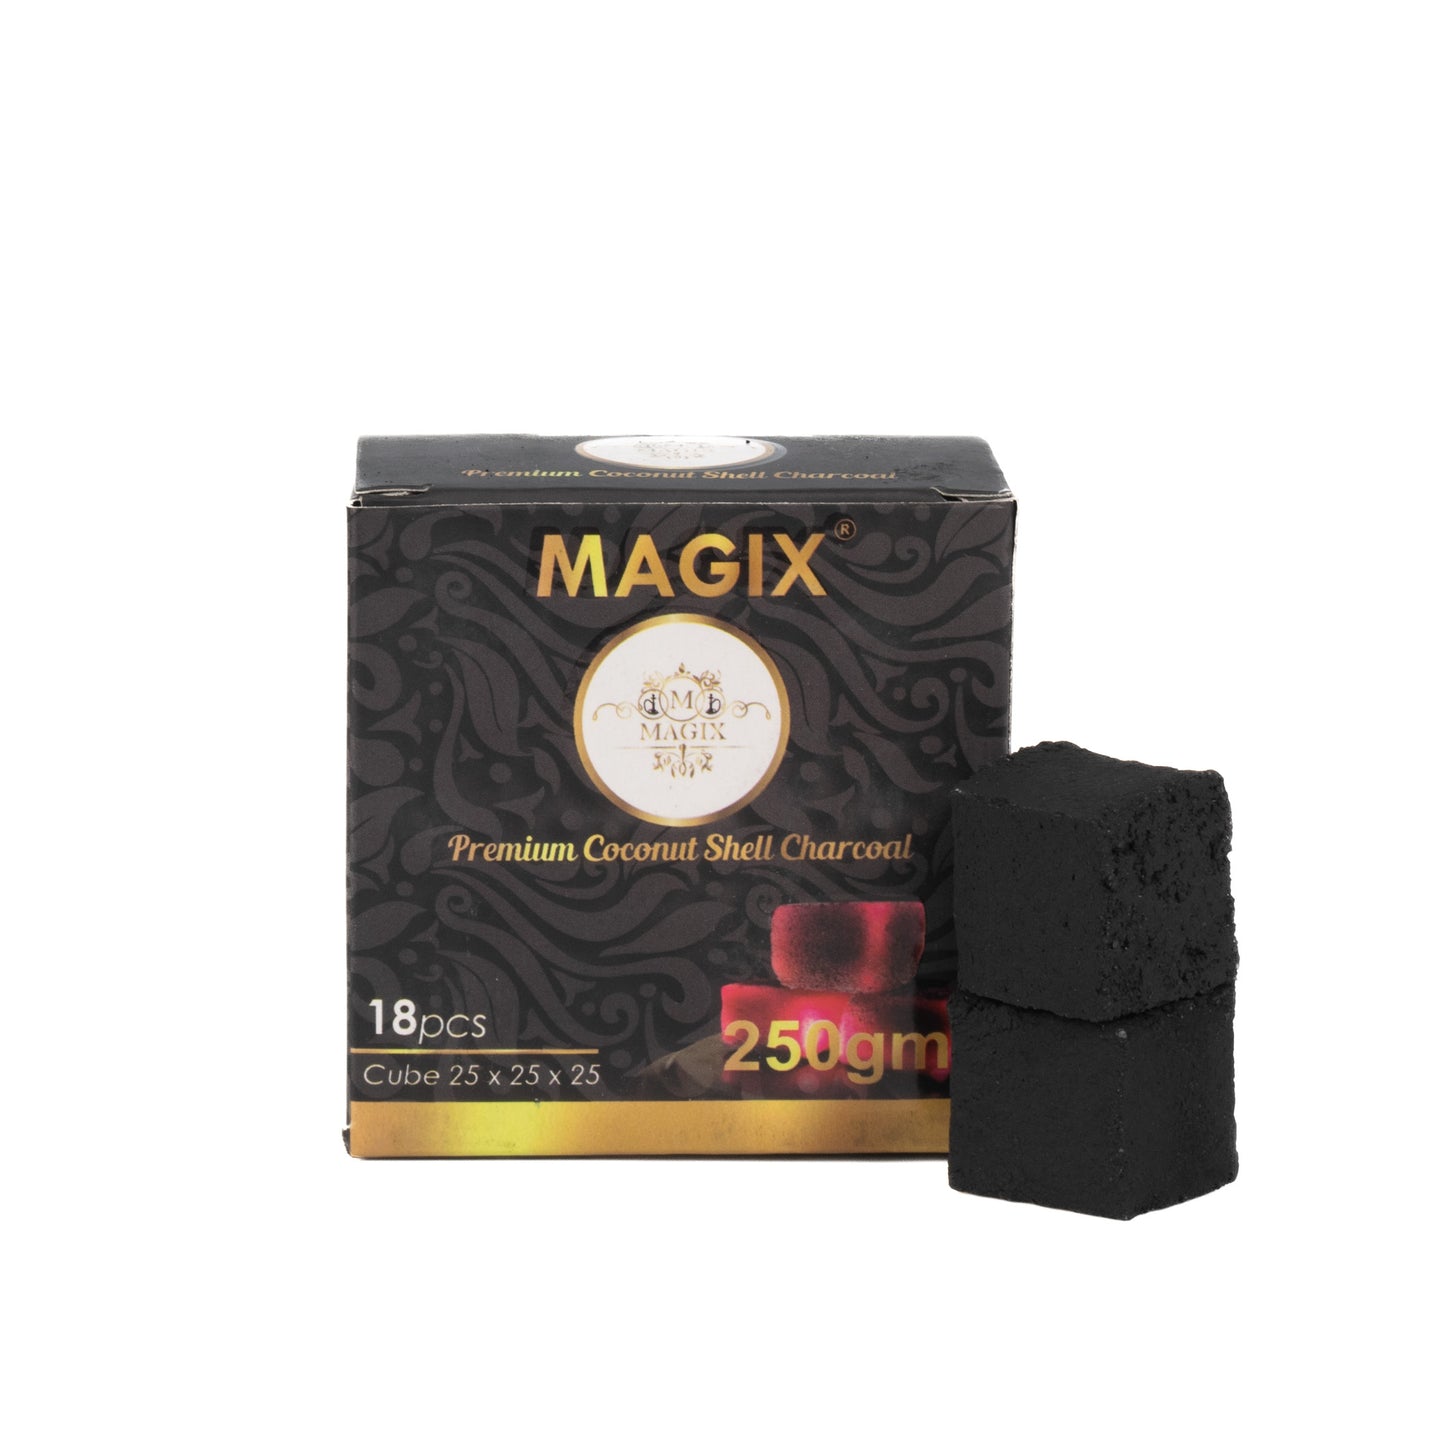 Magix Coconut Coal for Hookah 250g Pack - 18pcs